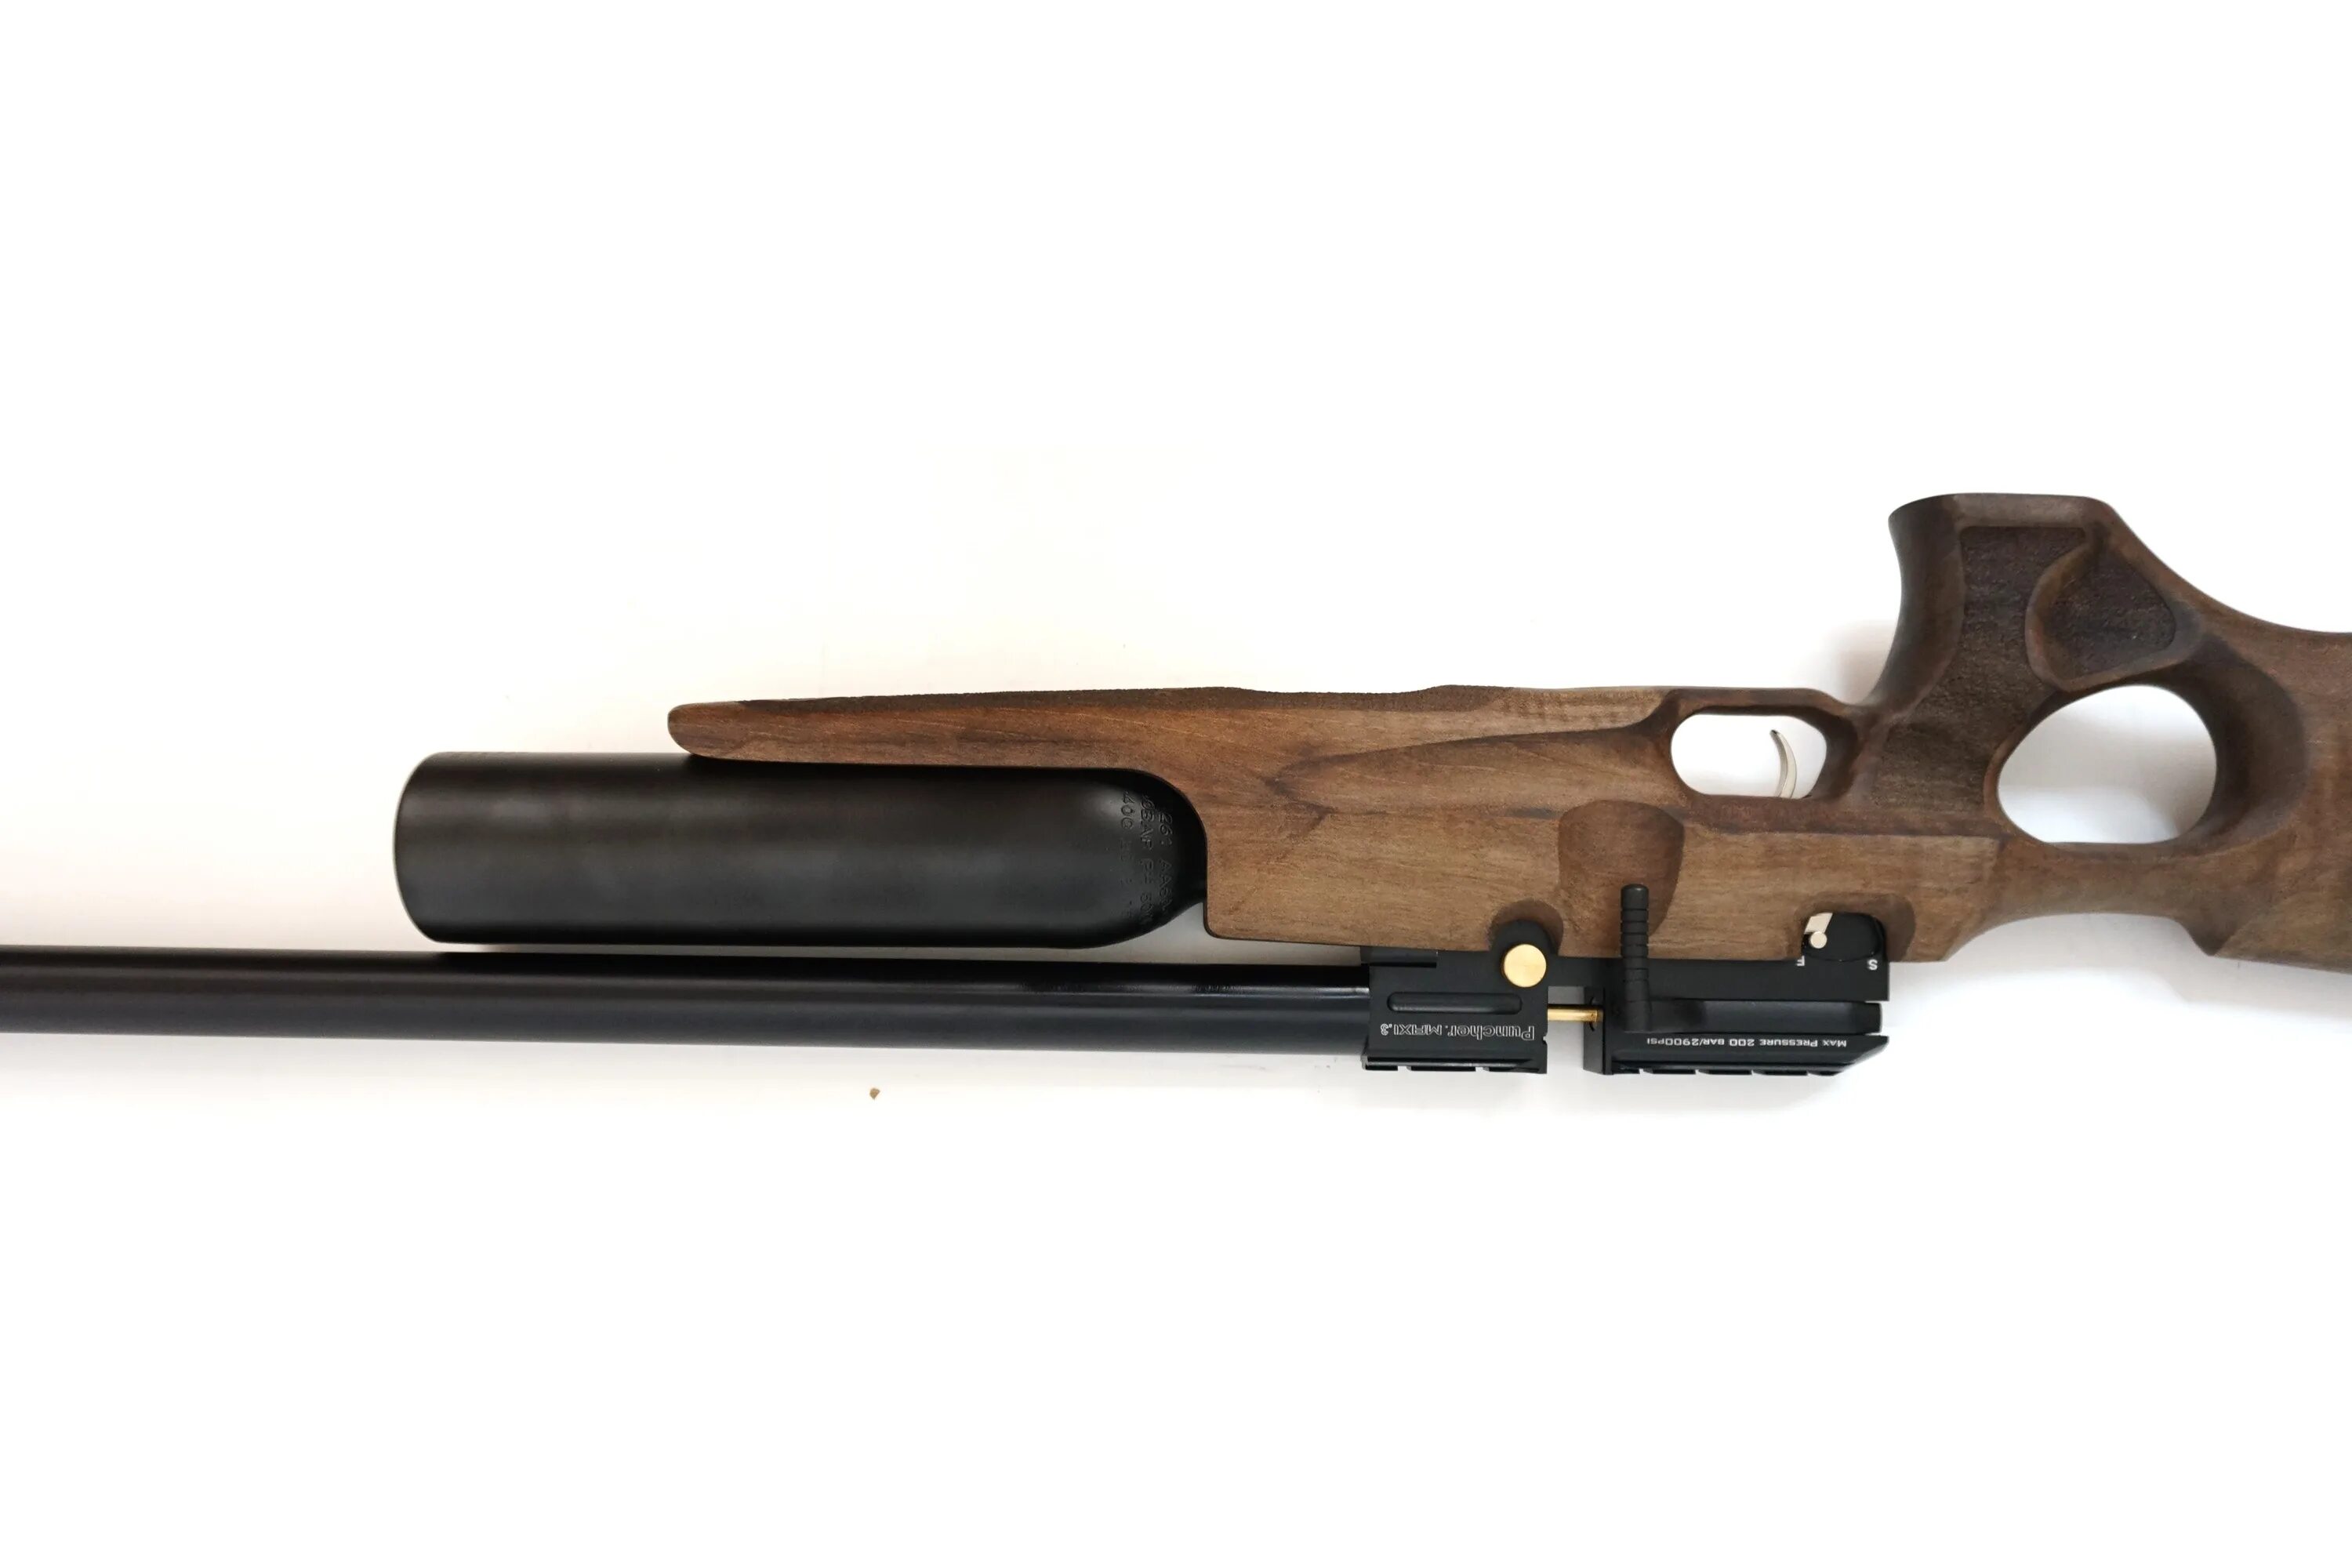 Пневматическая винтовка Kral Puncher. Пневматическая винтовка Kral Puncher Jumbo. PCP Kral Puncher Maxi 3 6.35 mm Jumbo. Пневматическая винтовка PCP Kral Puncher Maxi 3, орех Jumbo, 6.35. Крал 5.5 купить